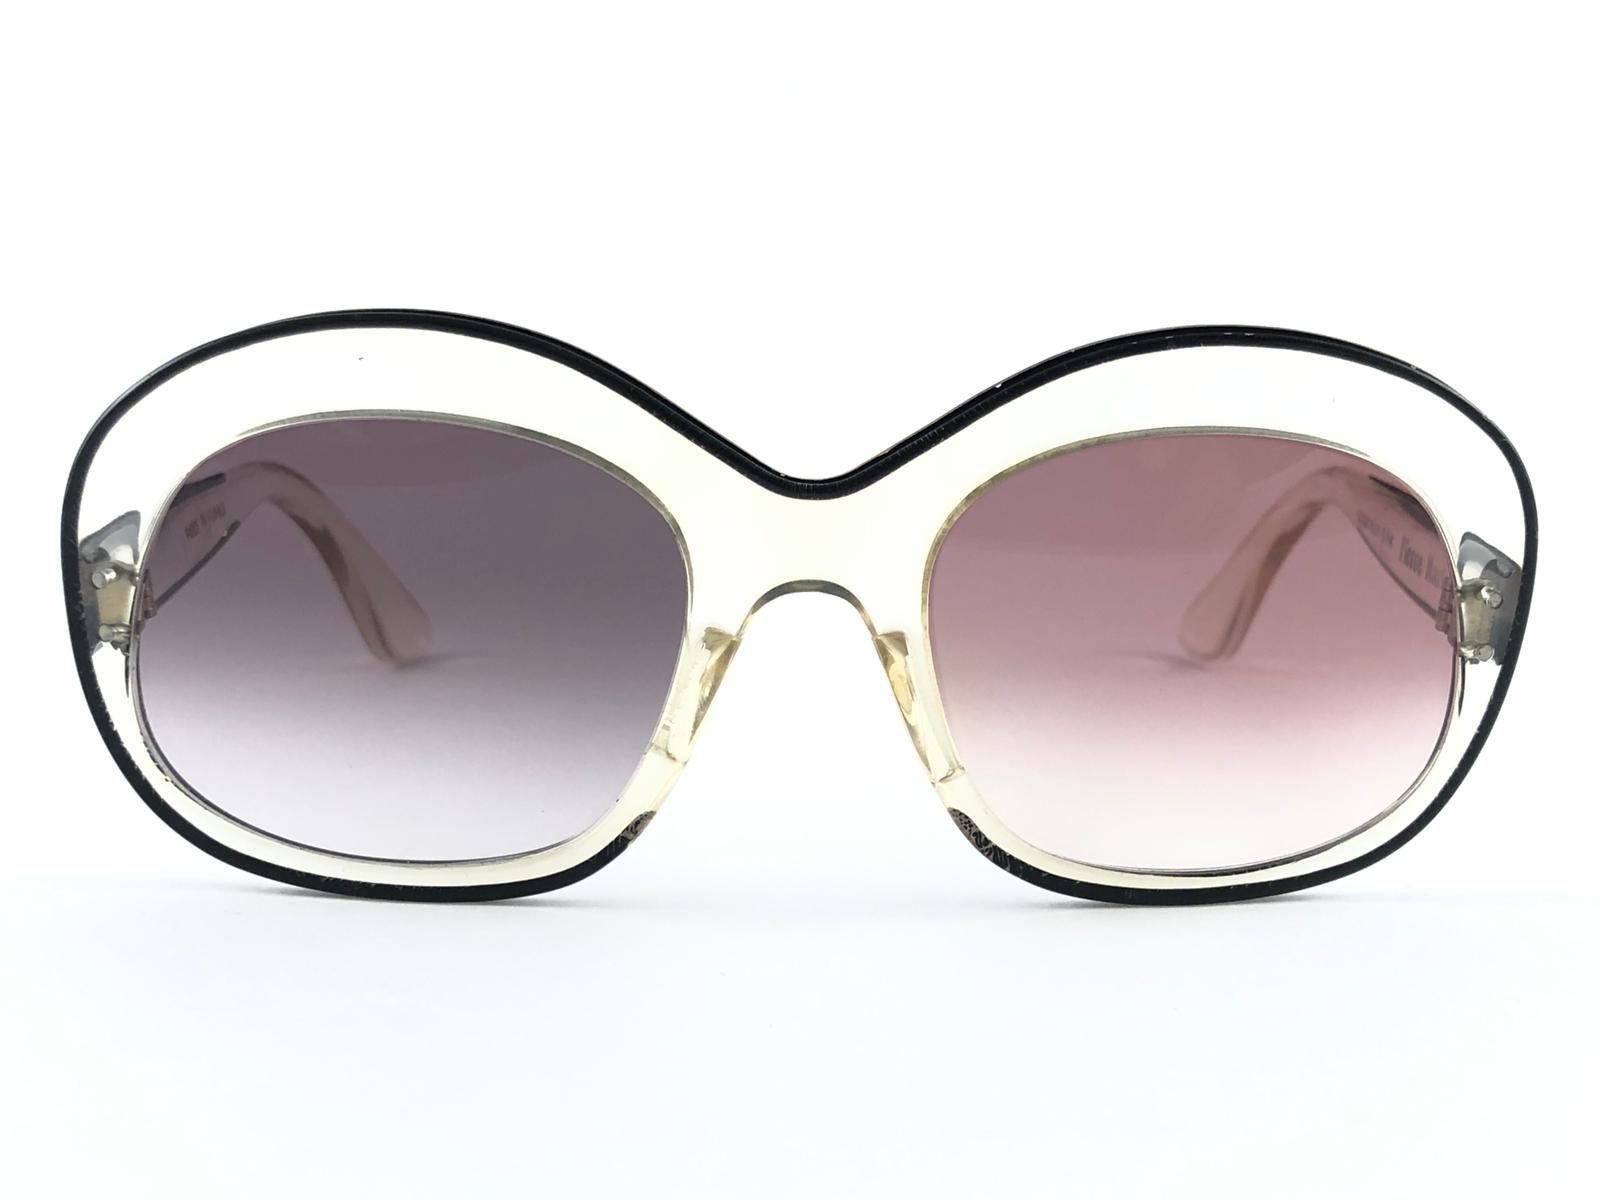 Neue und sehr seltene Pierre Marly Sourcilla Sonnenbrille. Makellose zwei verschiedene Gläserfarben, die das Gefühl dieser modischen Brille noch verstärken.

Erstaunlich klarer Rahmen. Schicke und verrückte 1960er Jahre Pierre Marly sehr eigene